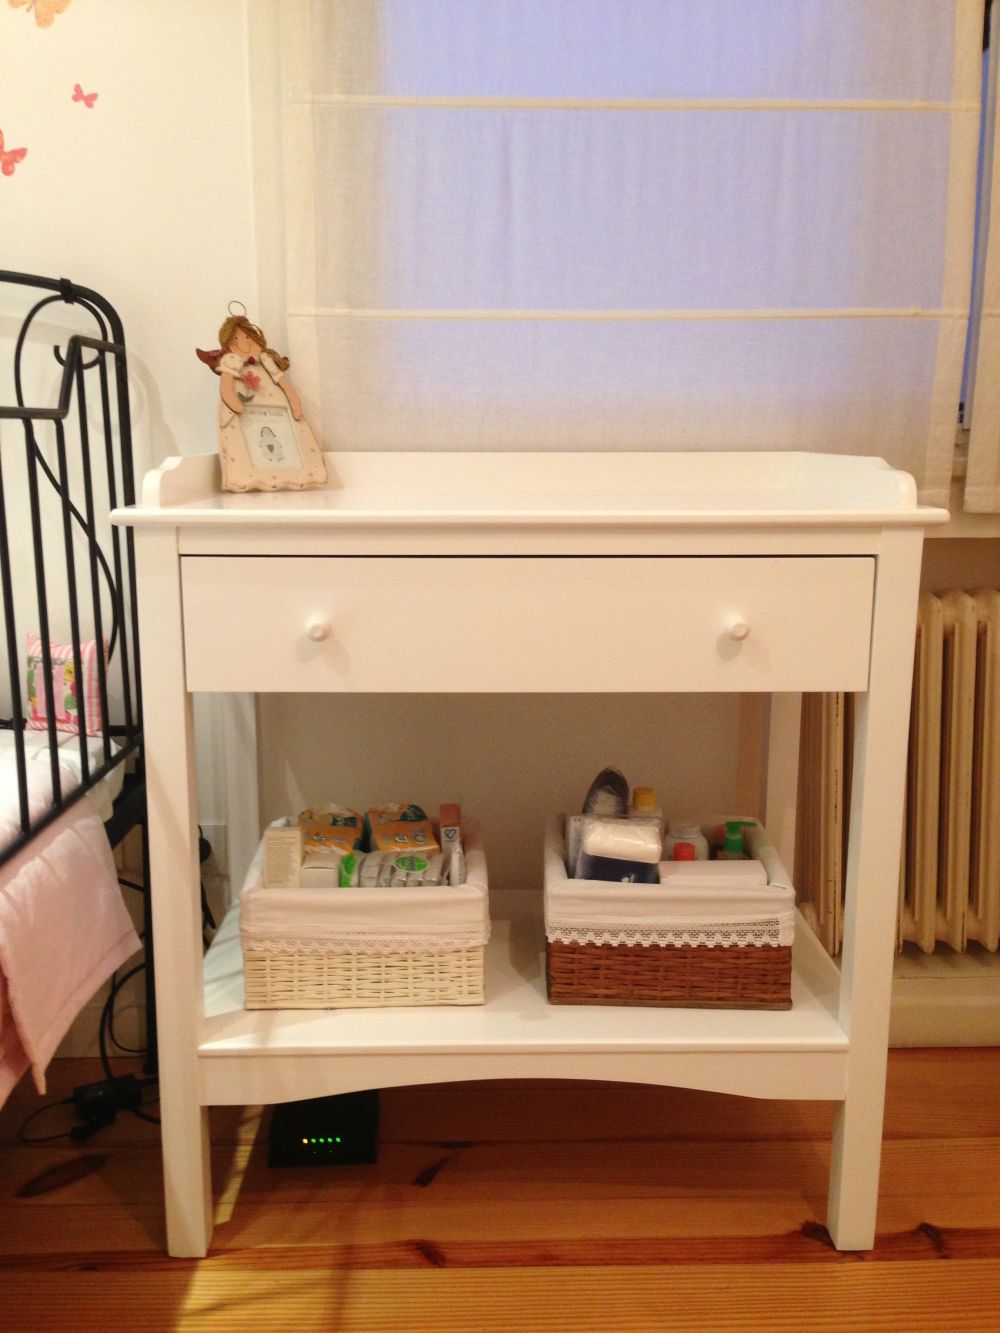 Muebles Infantiles-Cambiador Para Bebé 